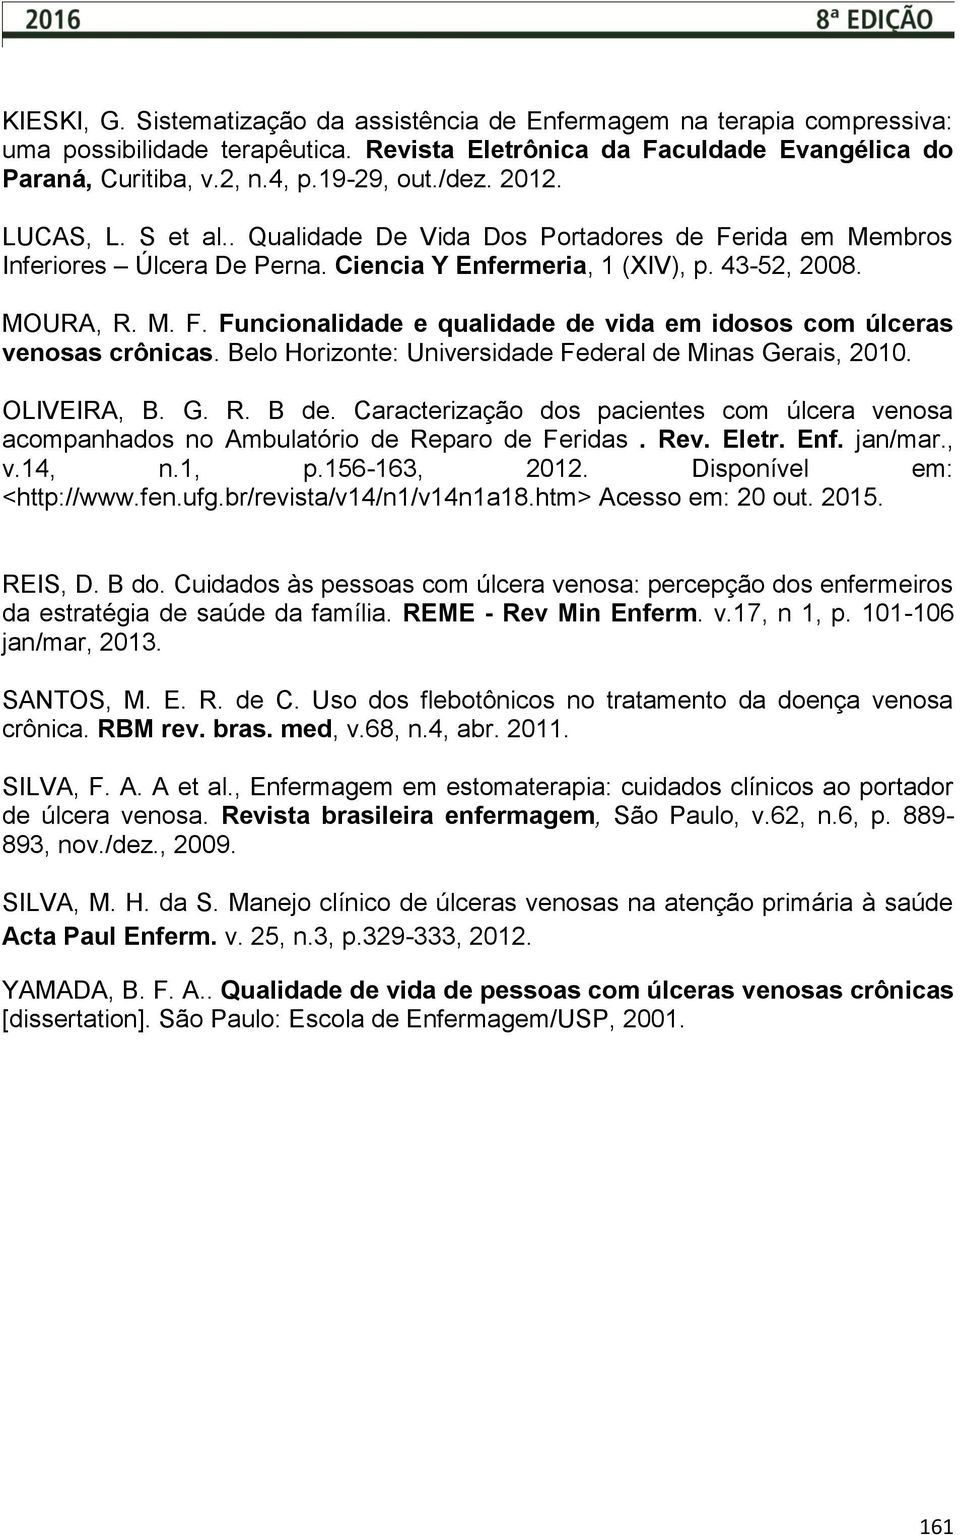 Belo Horizonte: Universidade Federal de Minas Gerais, 2010. OLIVEIRA, B. G. R. B de. Caracterização dos pacientes com úlcera venosa acompanhados no Ambulatório de Reparo de Feridas. Rev. Eletr. Enf.